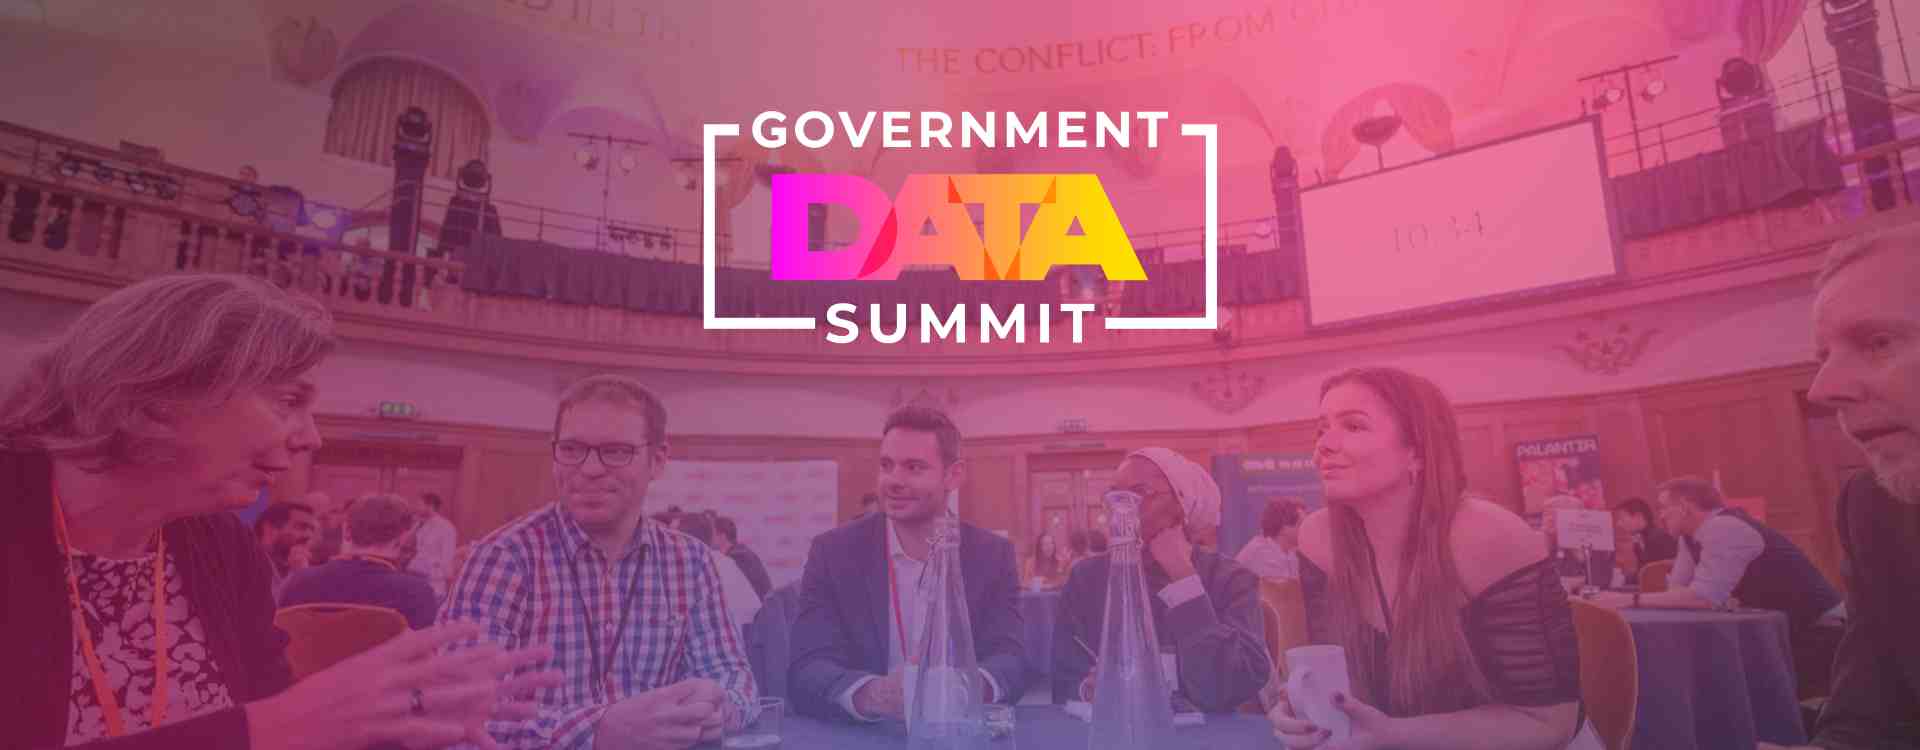 Data Summit Partnership (1)